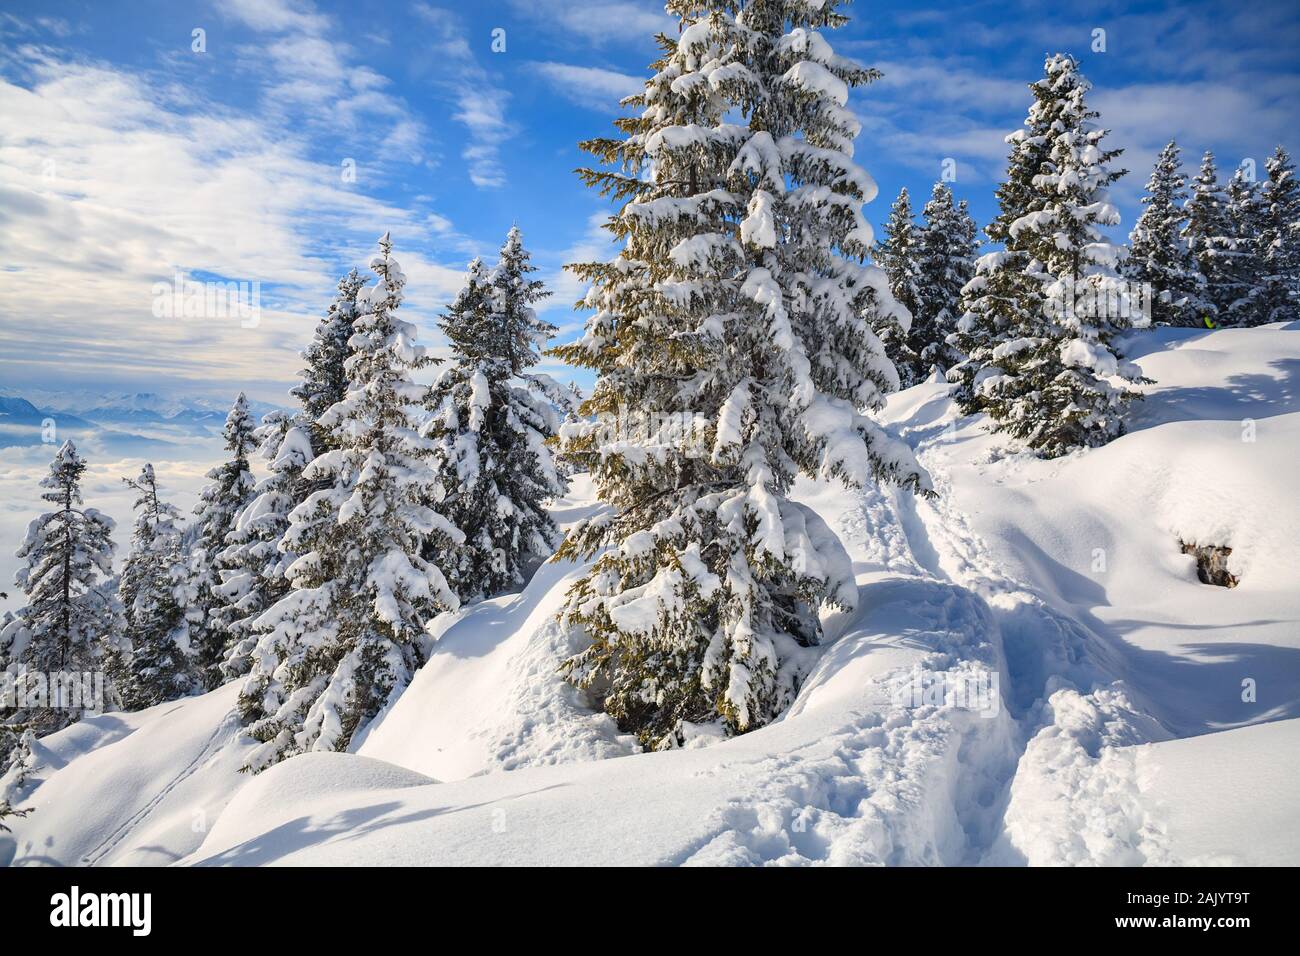 Winter forest in Alps near Kufstein in Austria, Europe. Stock Photo